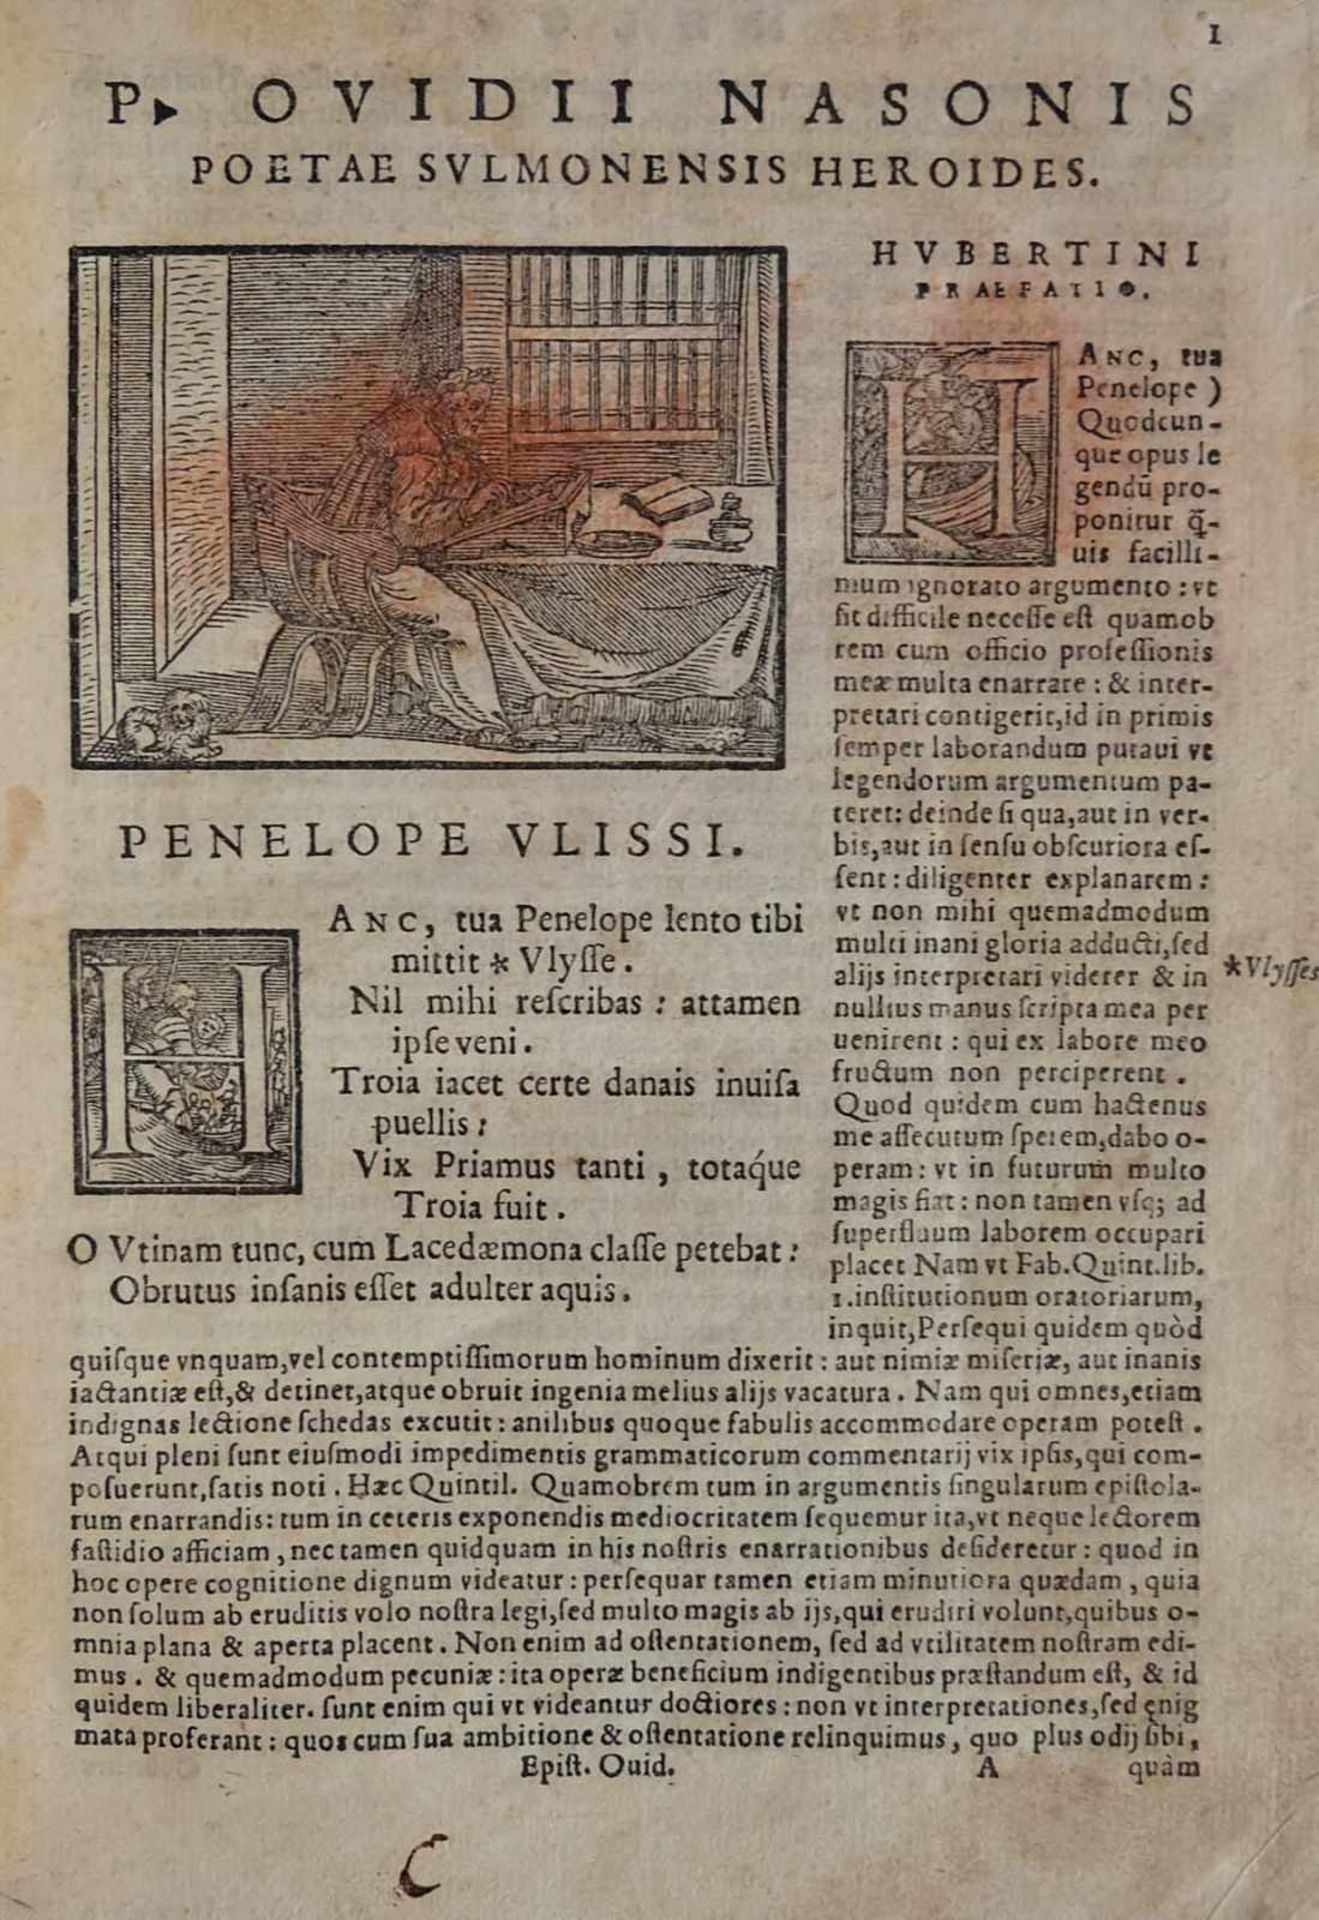 BONELLUM, Ioannem Mariam, P. Ovidii Nasonis Poetae Sulmonensis Heroides, Venedig 1567, kein